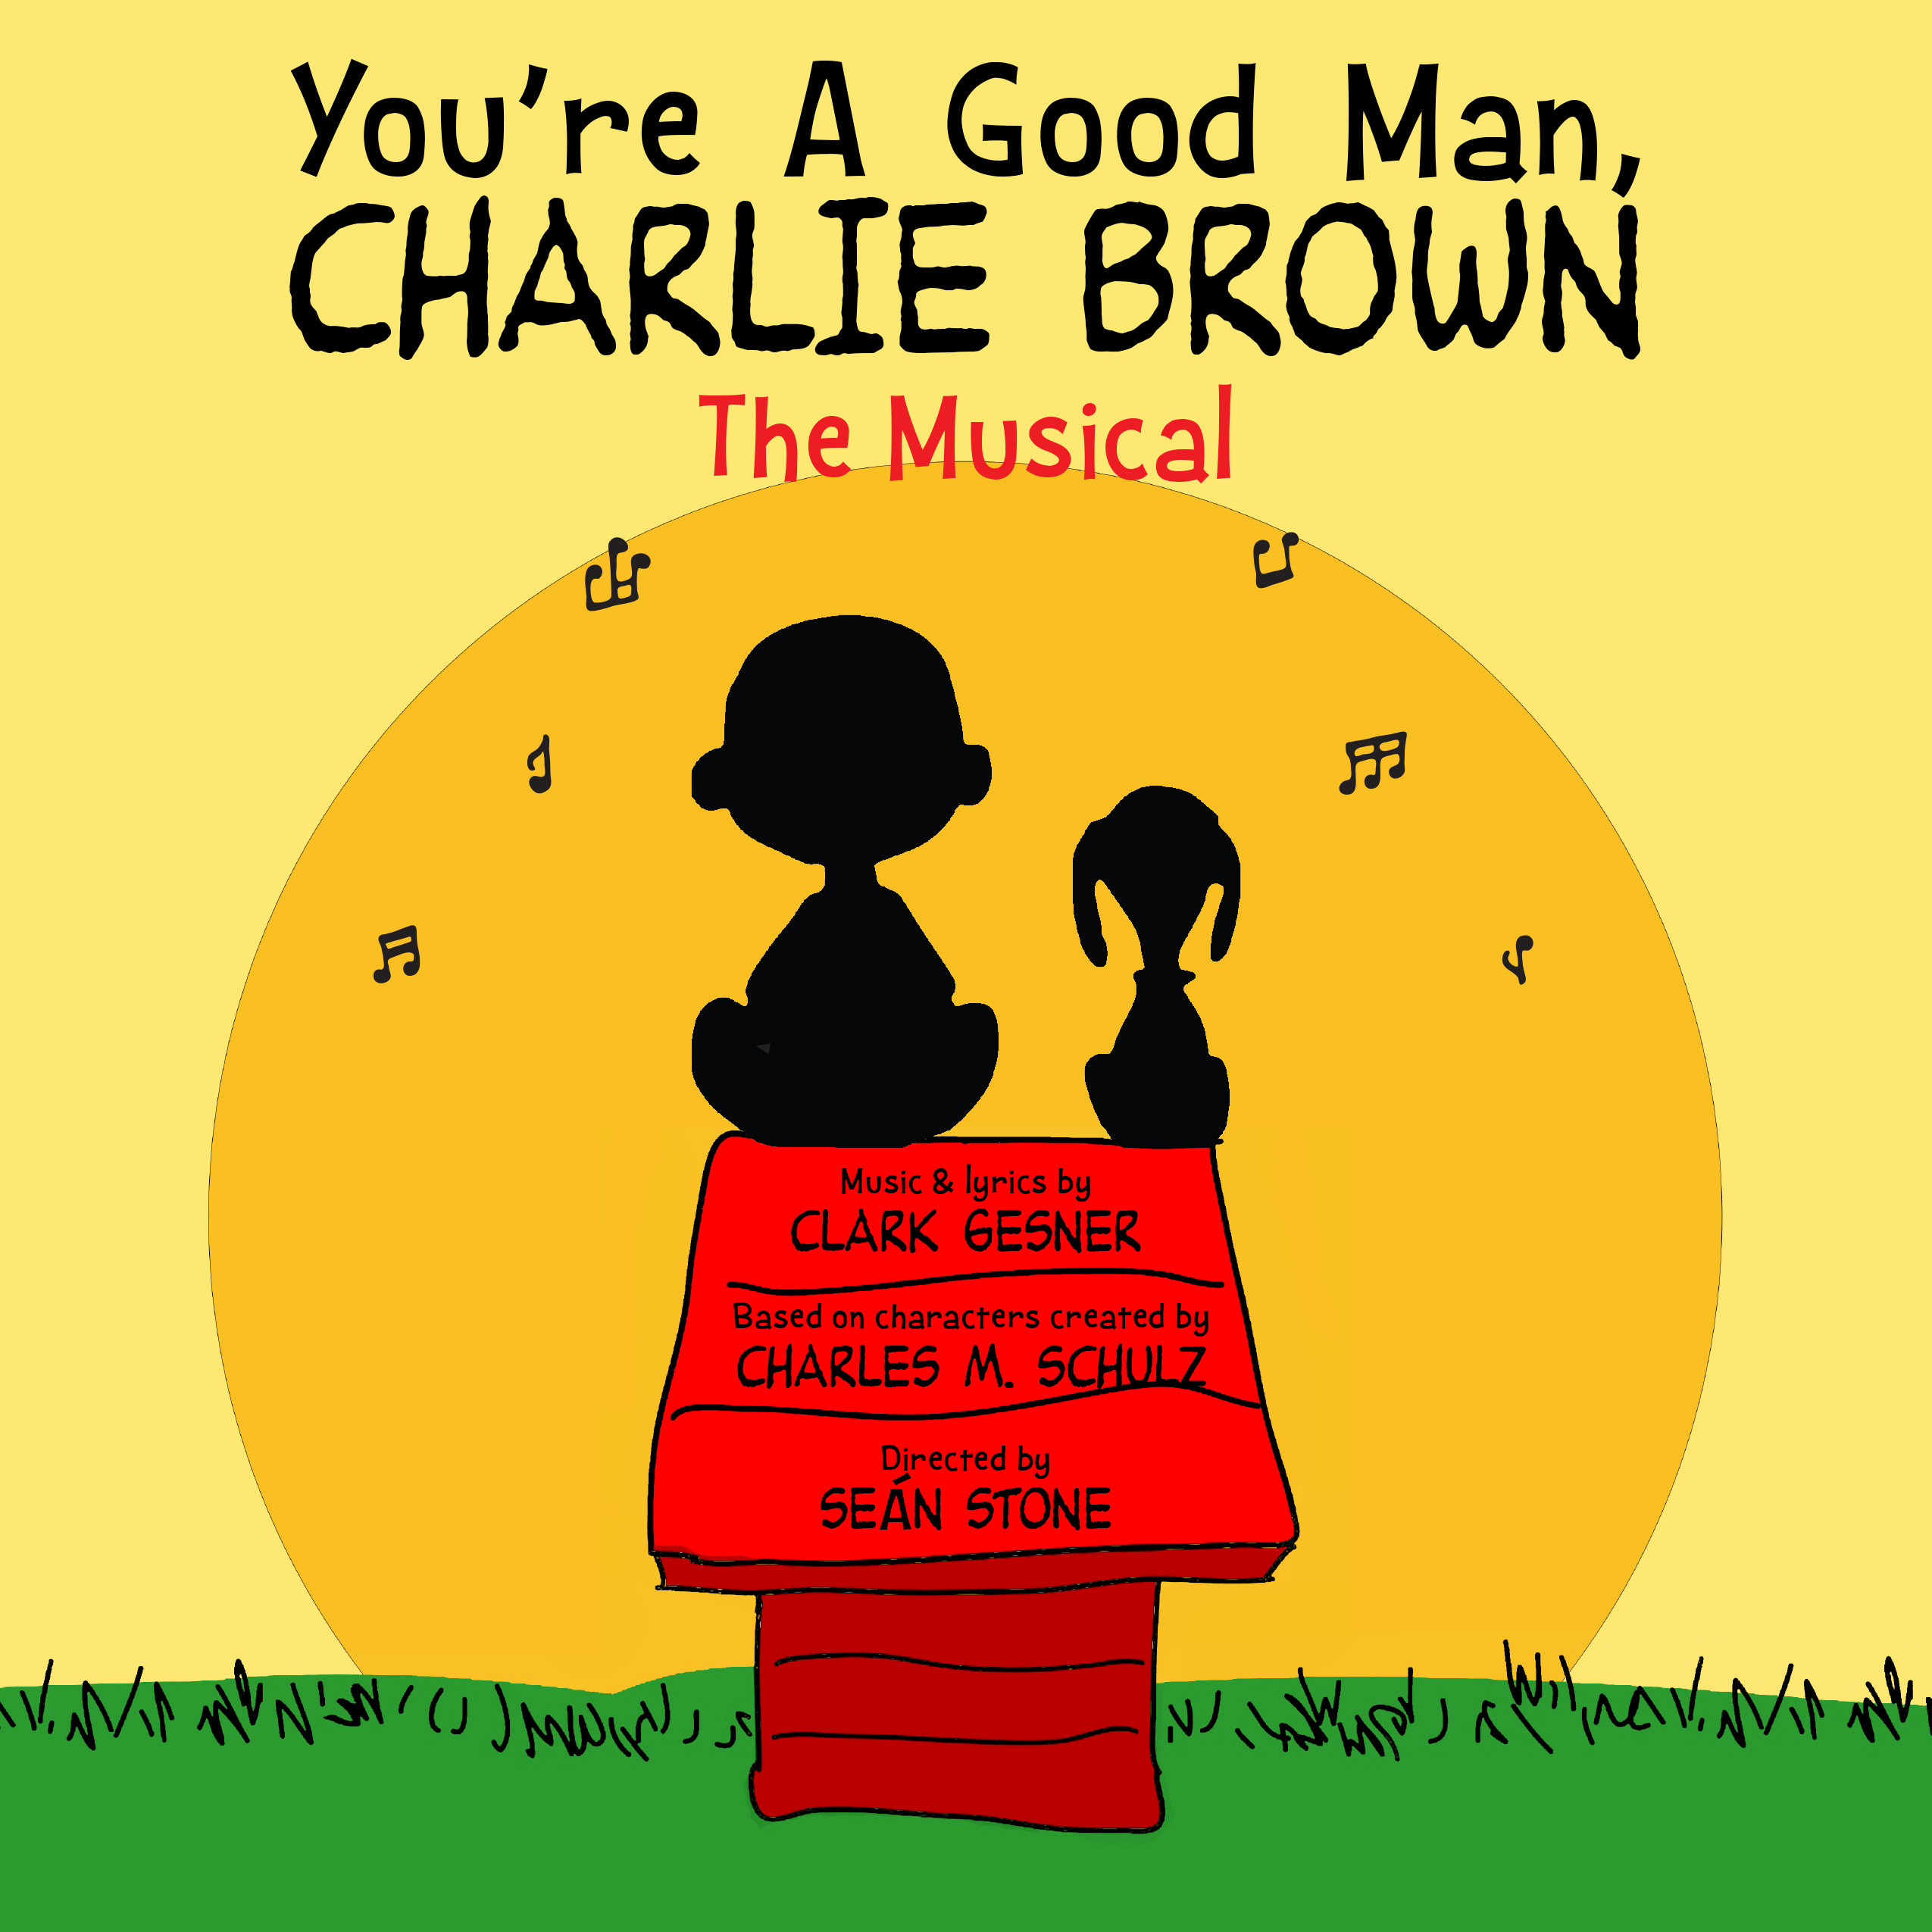 charlie-brown-icon.jpg